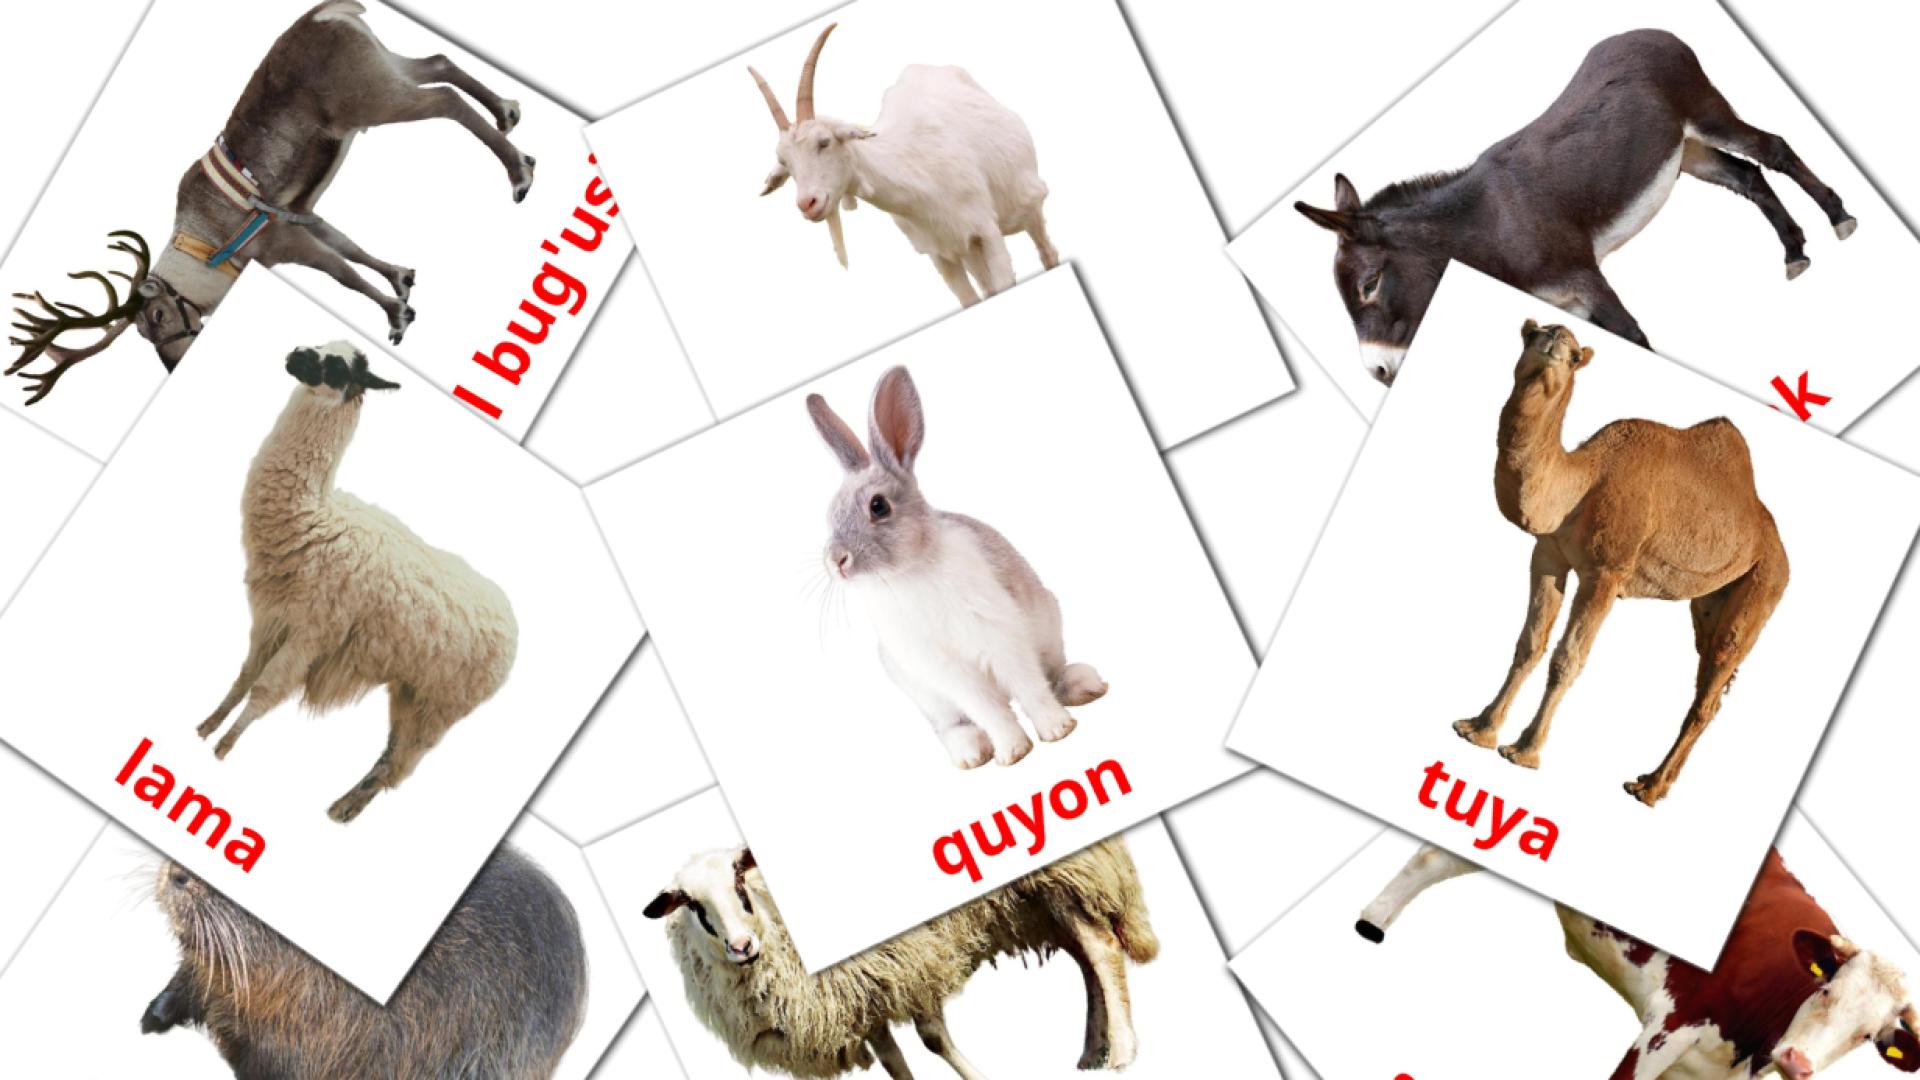 15 tarjetas didacticas de Ferma hayvonlari